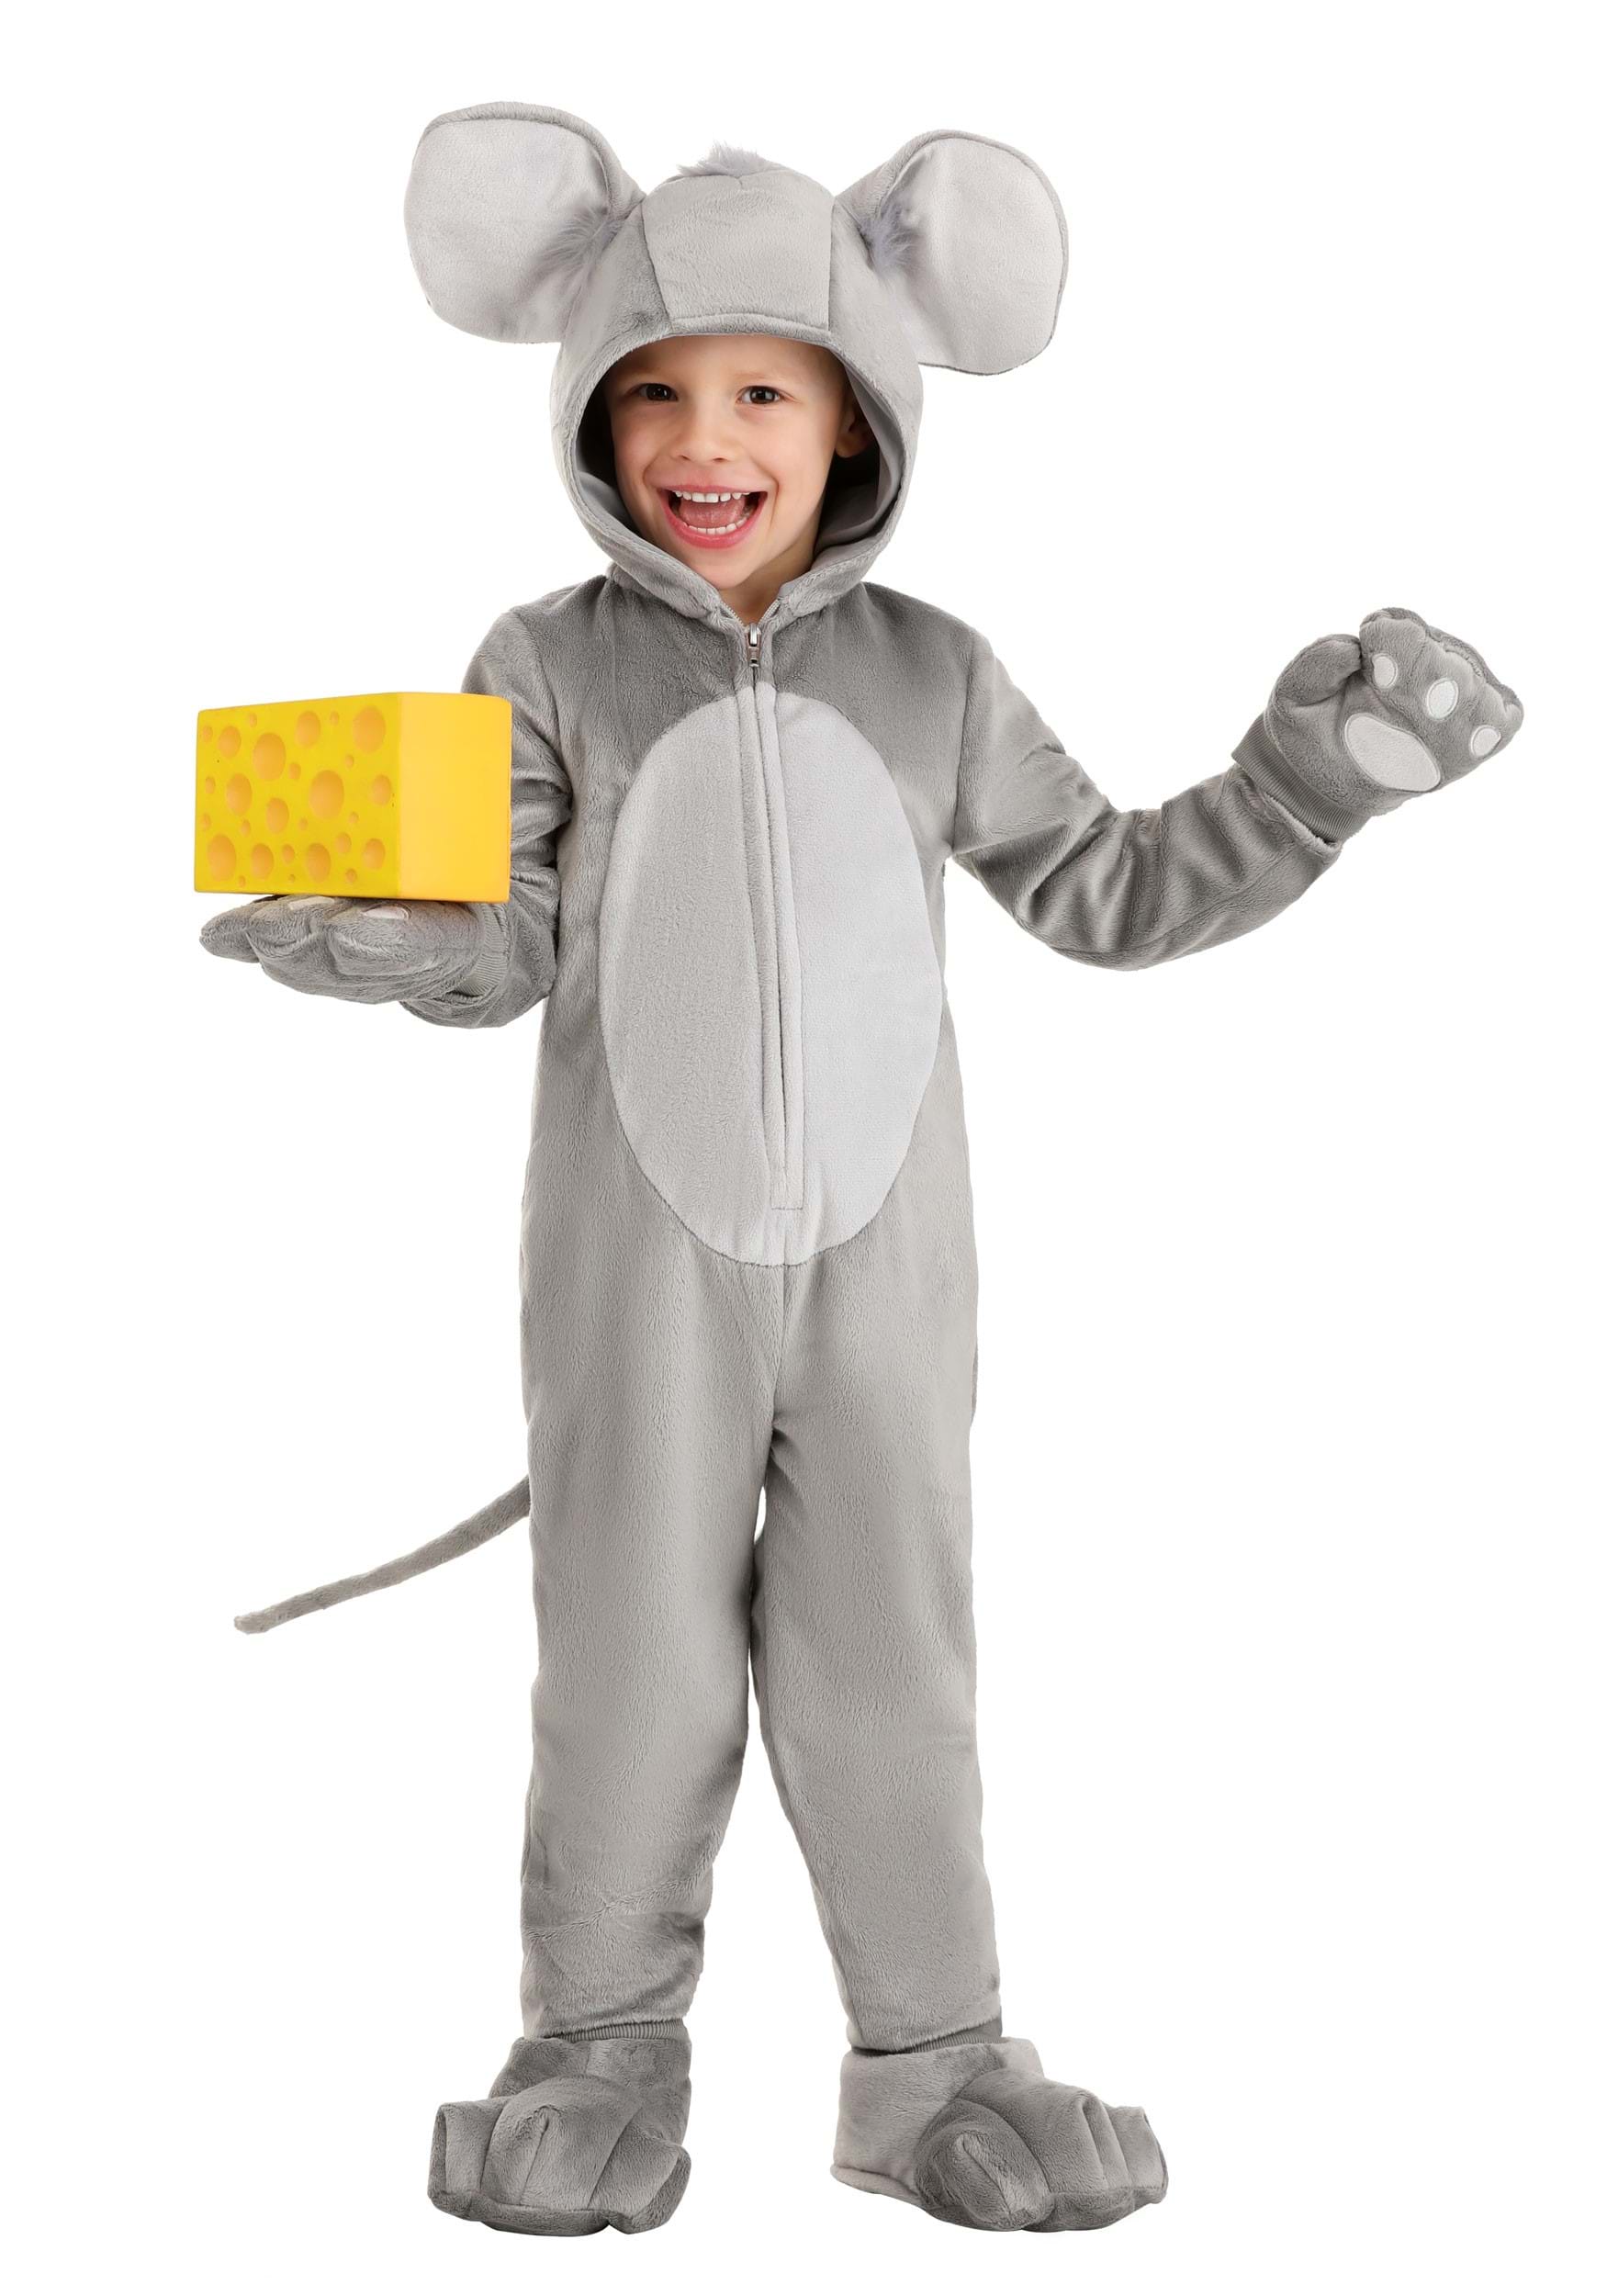 Kid's Premium Mouse Costume